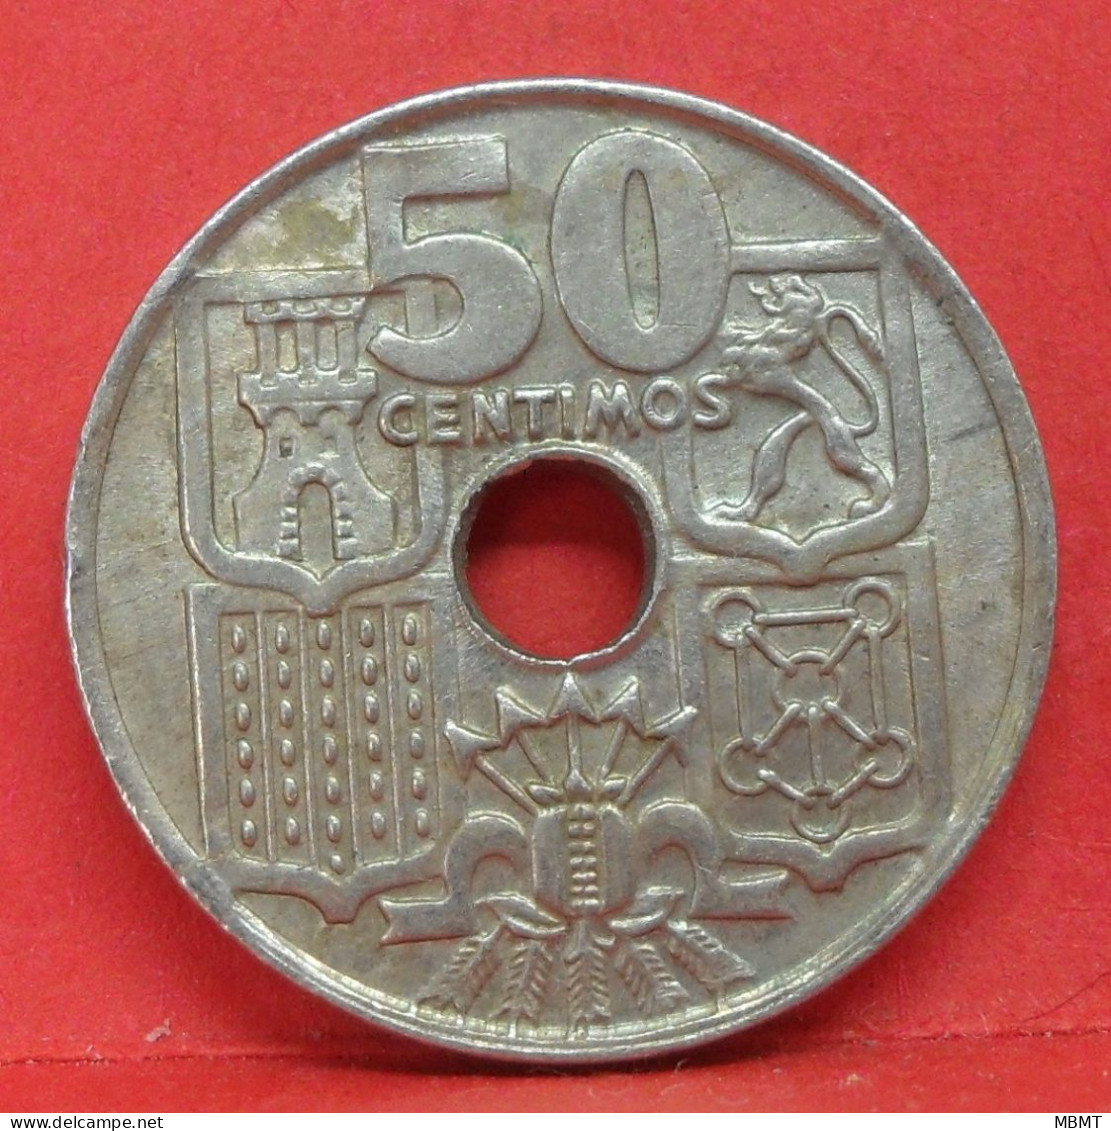 50 Centimos 1949 étoile 54 - SUP - Pièce Monnaie Espagne - Article N°2216 - 50 Céntimos